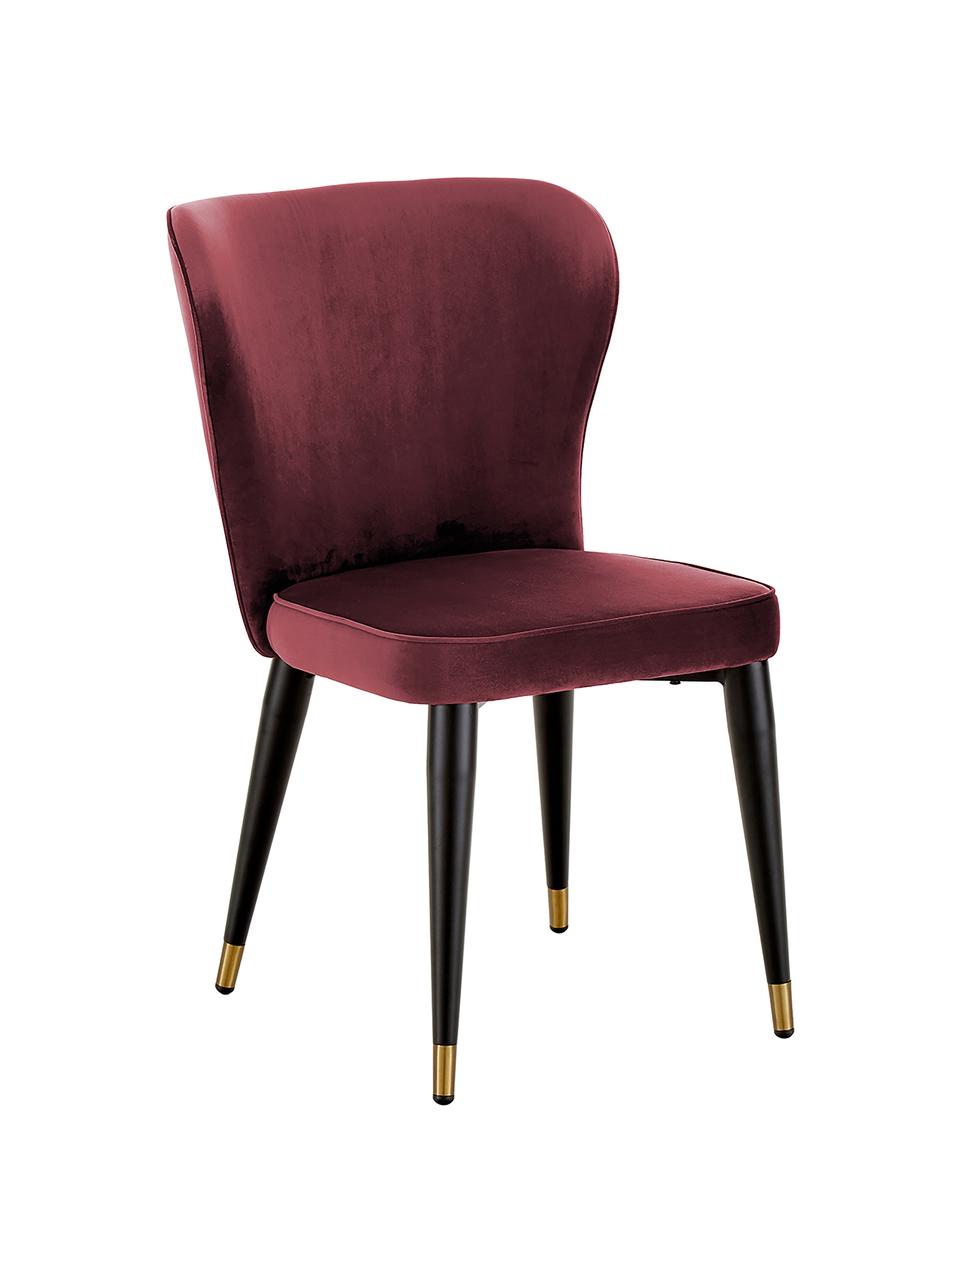 Krzesło tapicerowane z aksamitu Cleo, Tapicerka: aksamit (poliester) 30 00, Nogi: metal malowany proszkowo, Bordowy, S 51 x G 62 cm